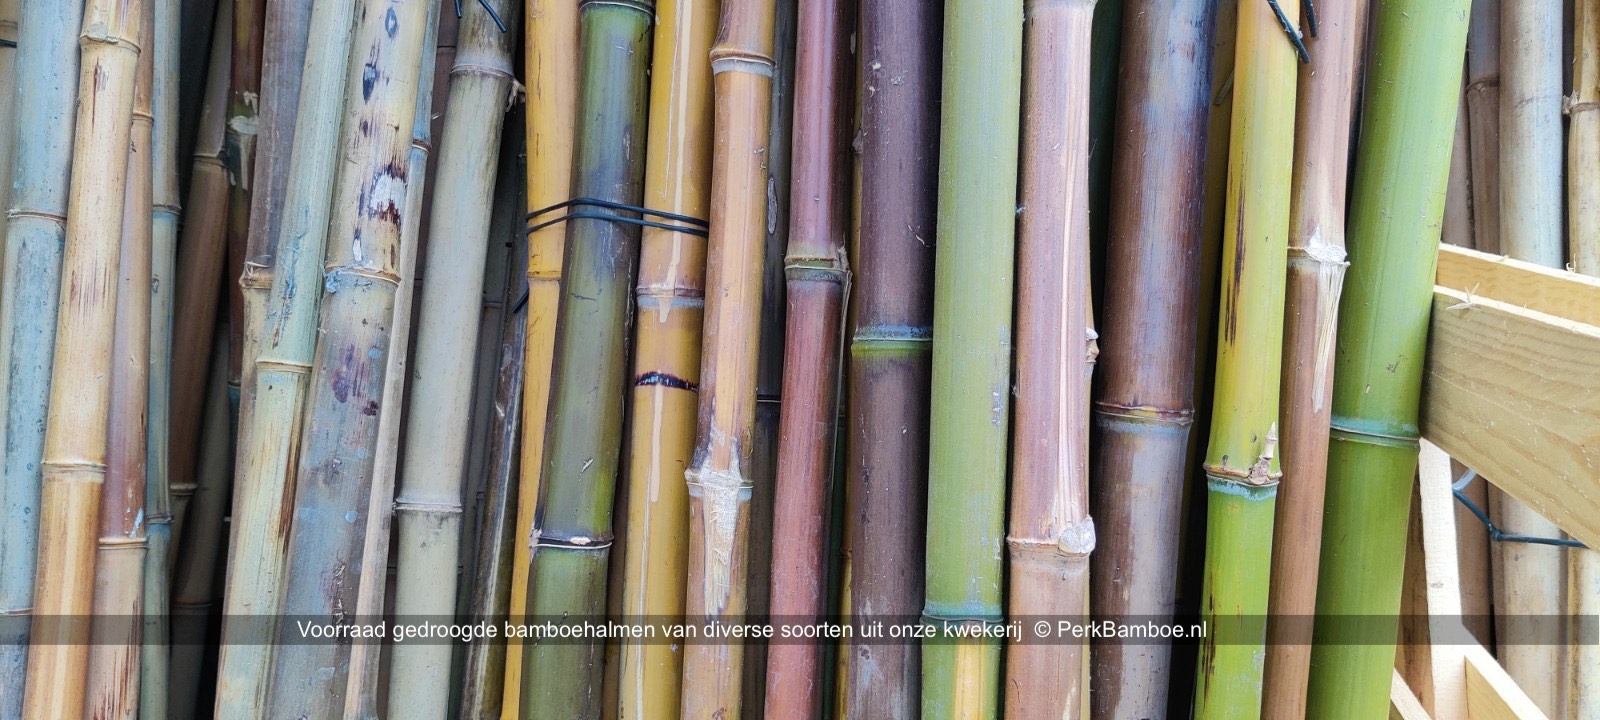 Verse en gedroogde bamboe stammen en halmen van onze kwekerij 5 PerkBamboe nl